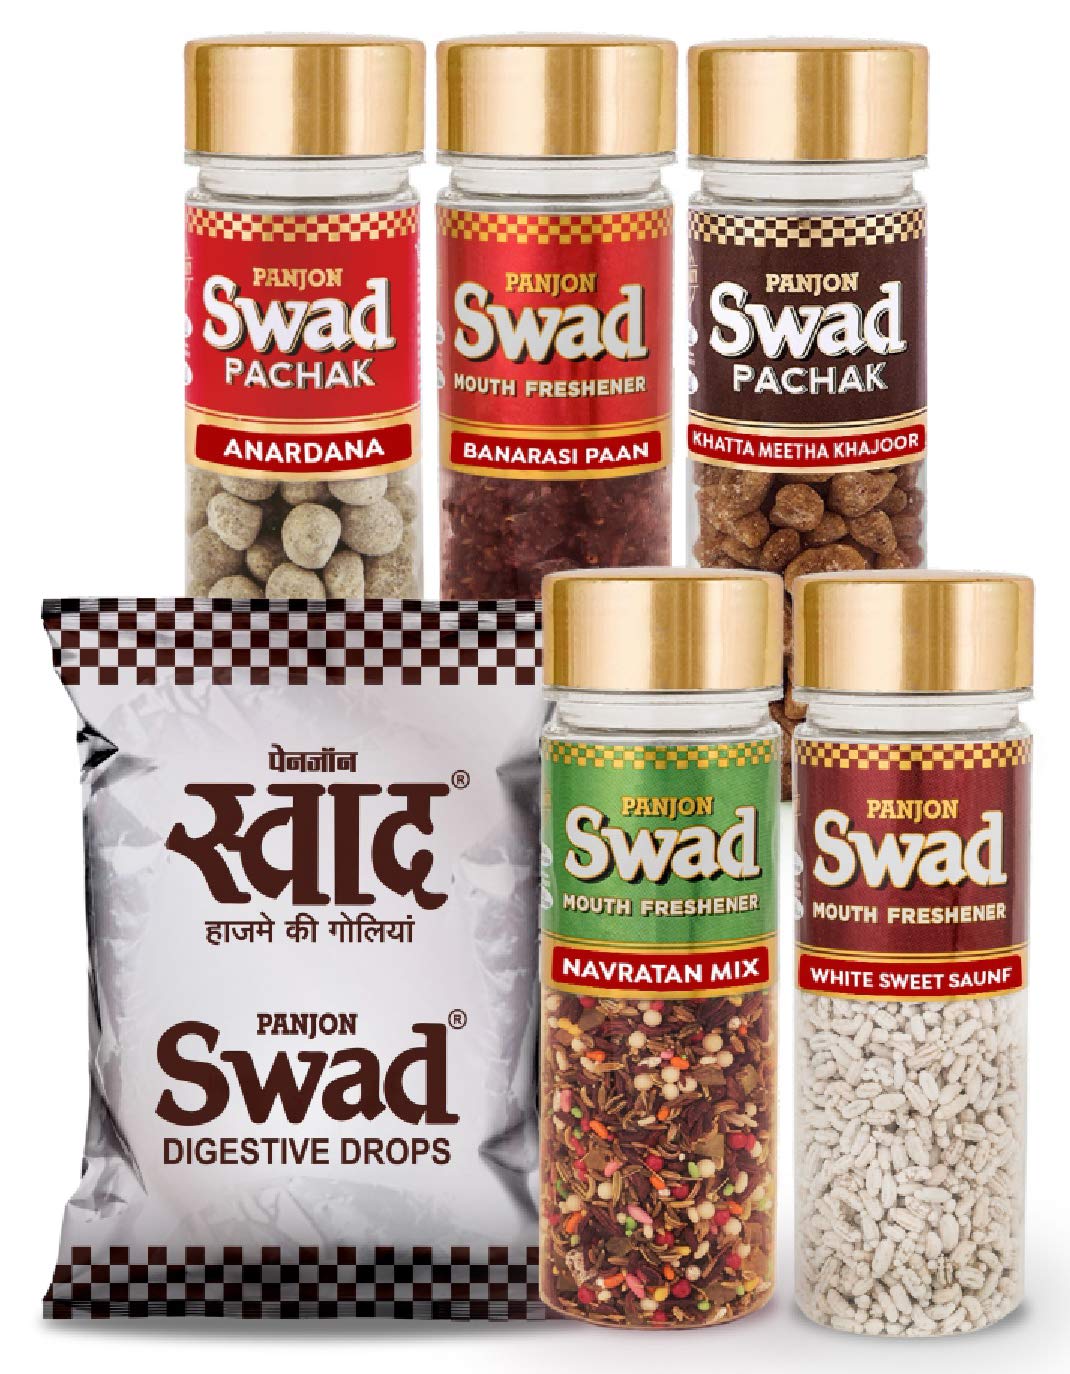 Swad Original 50 Candies & 5 Pachak Bottles White Sweet Saunf, Anardana goli, Khatta Meetha Khajoor, Banarasi Paan, Navratan Mix, 6 Units, 900 g